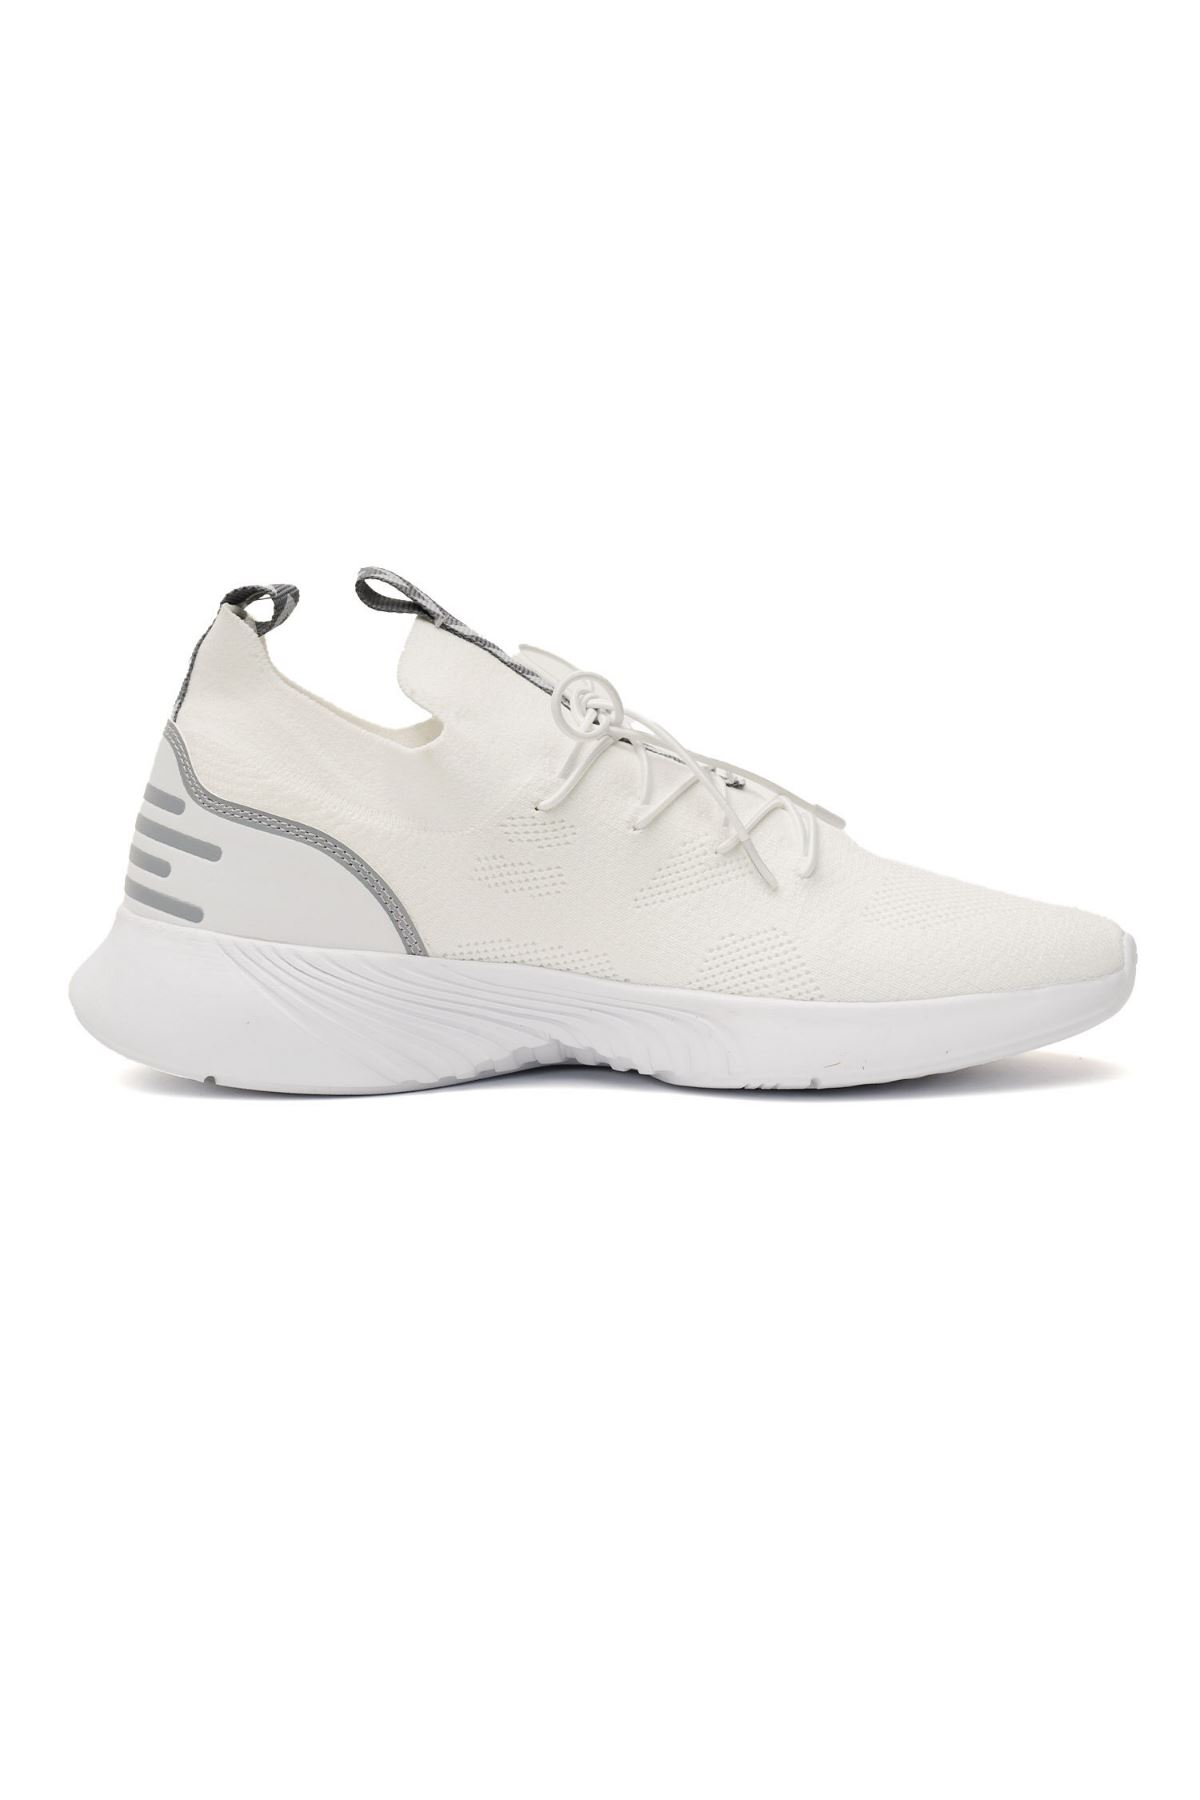 Kadın Beyaz Spor Ayakkabı - 900275-9001